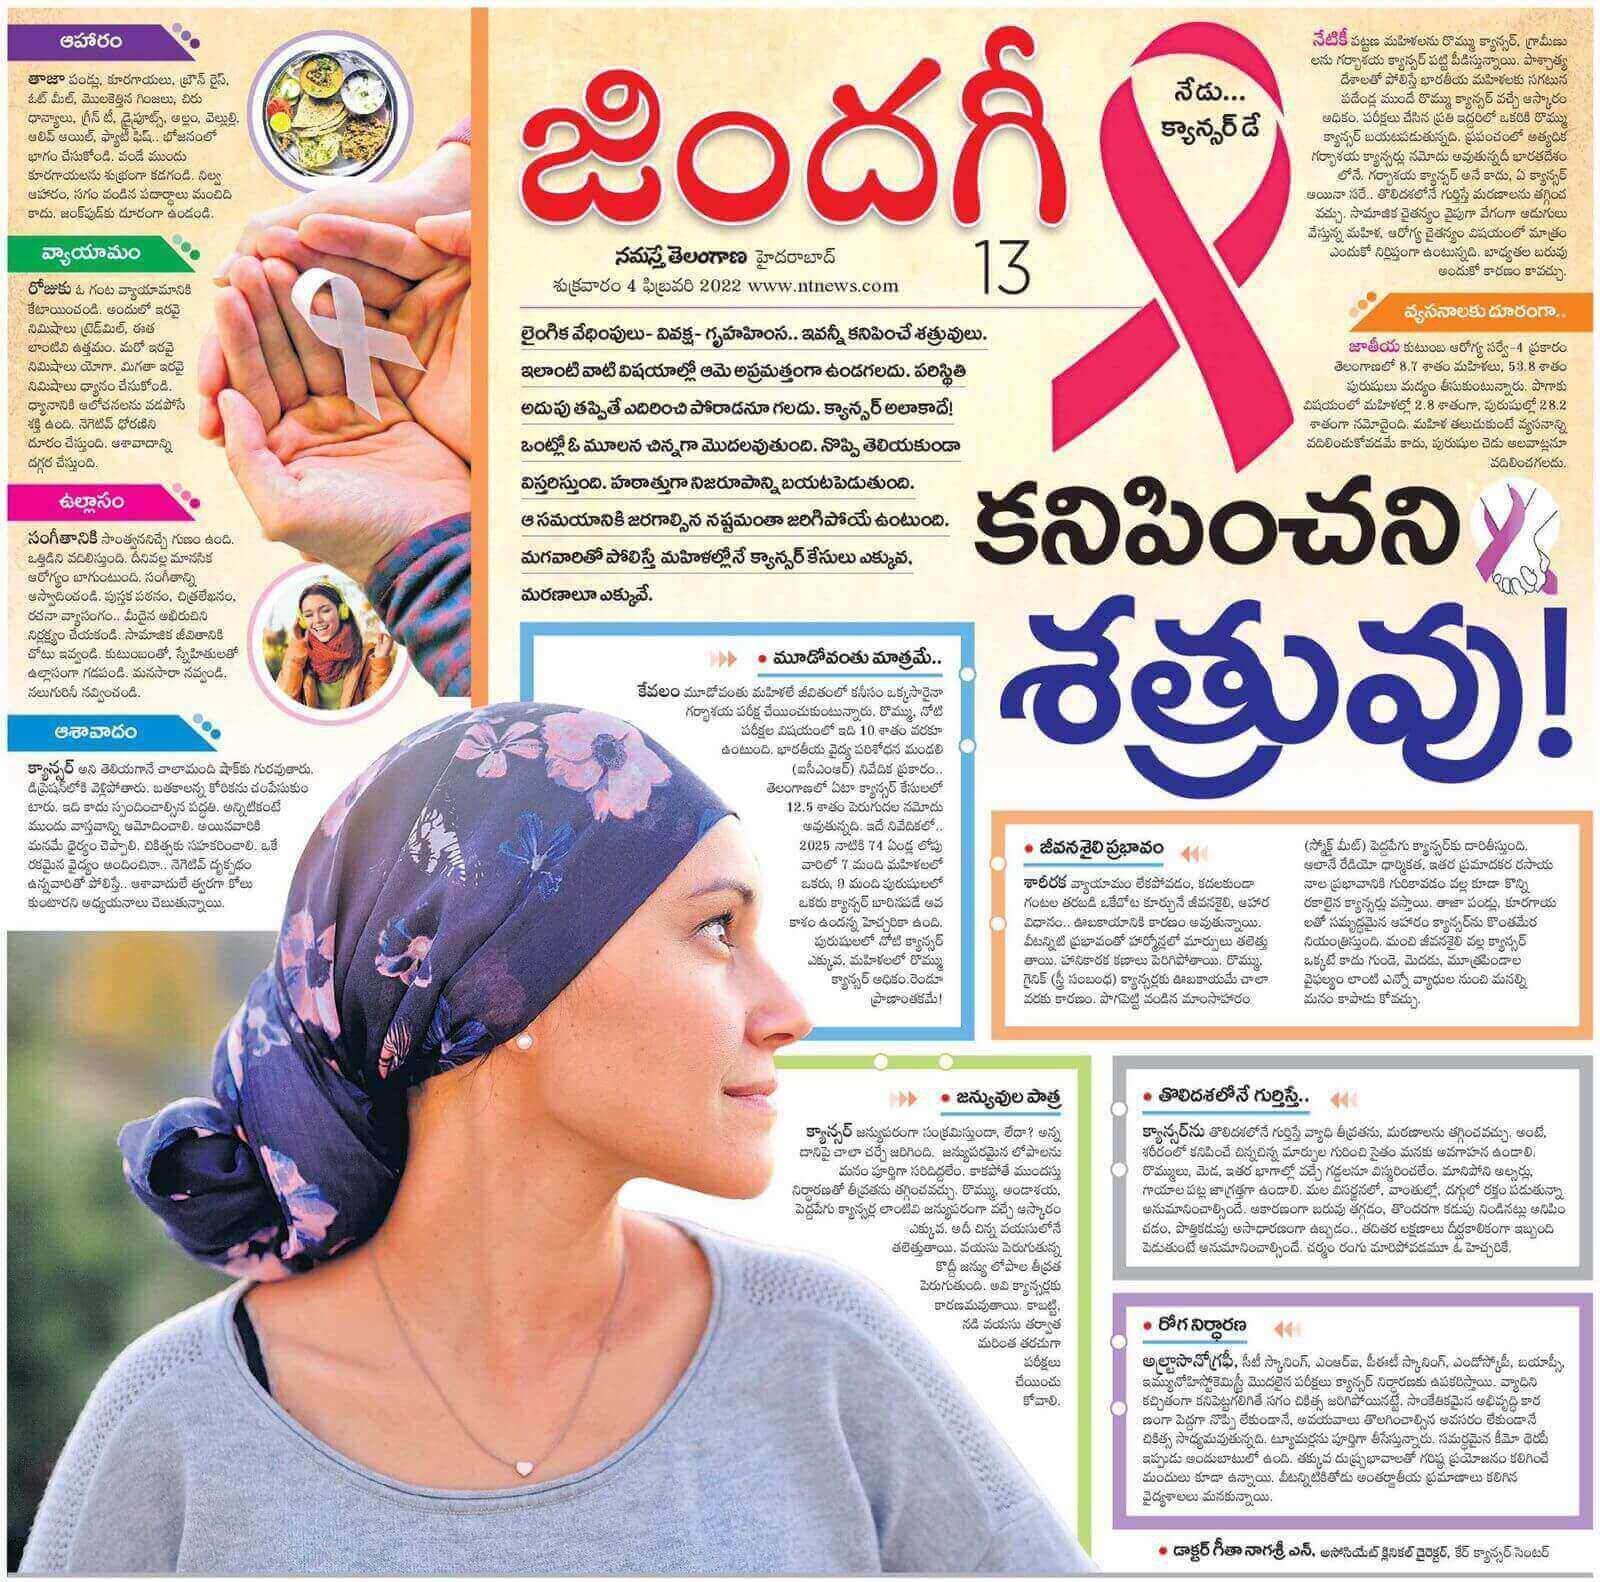 مقال عن اليوم العالمي للسرطان بقلم الدكتورة جيثا ناجاسري ن - استشاري جراحة الأورام